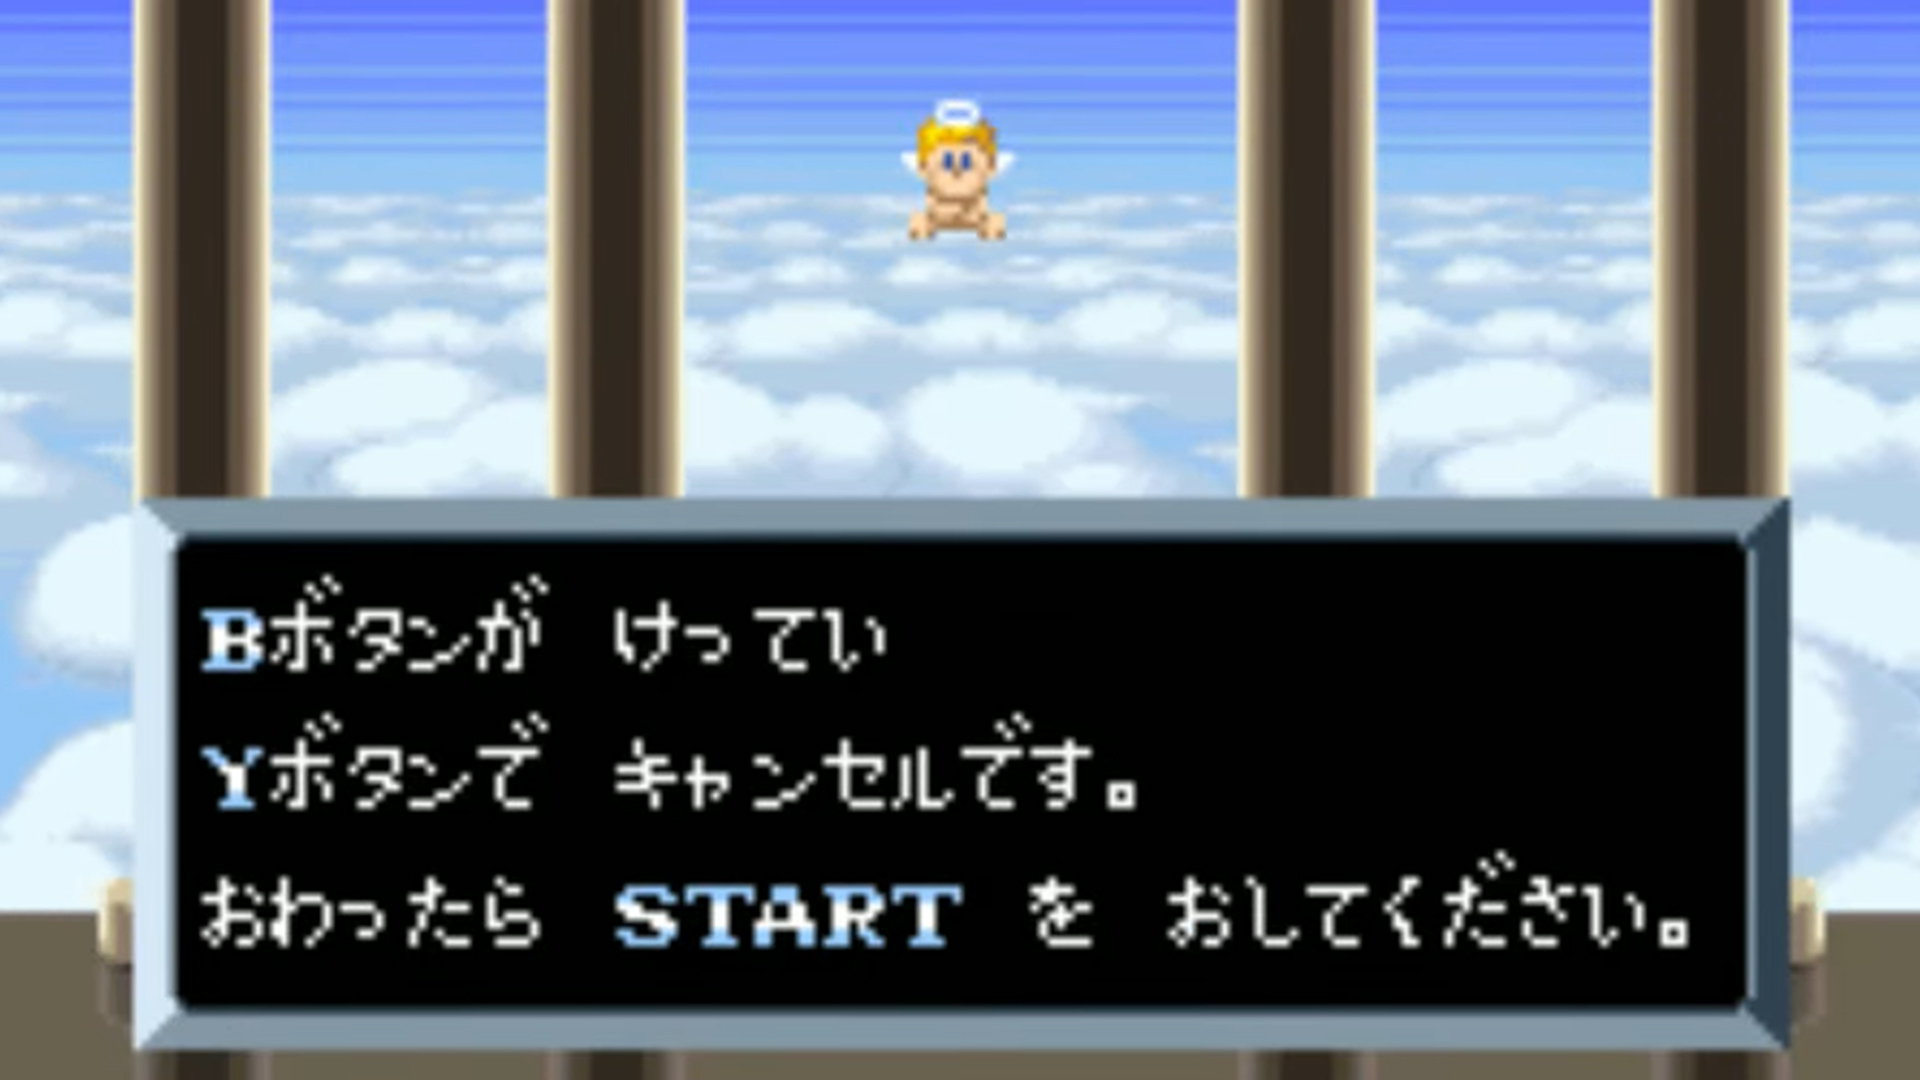 Эмулятор платформы RetroArch теперь автоматически переводит японские игры на английский